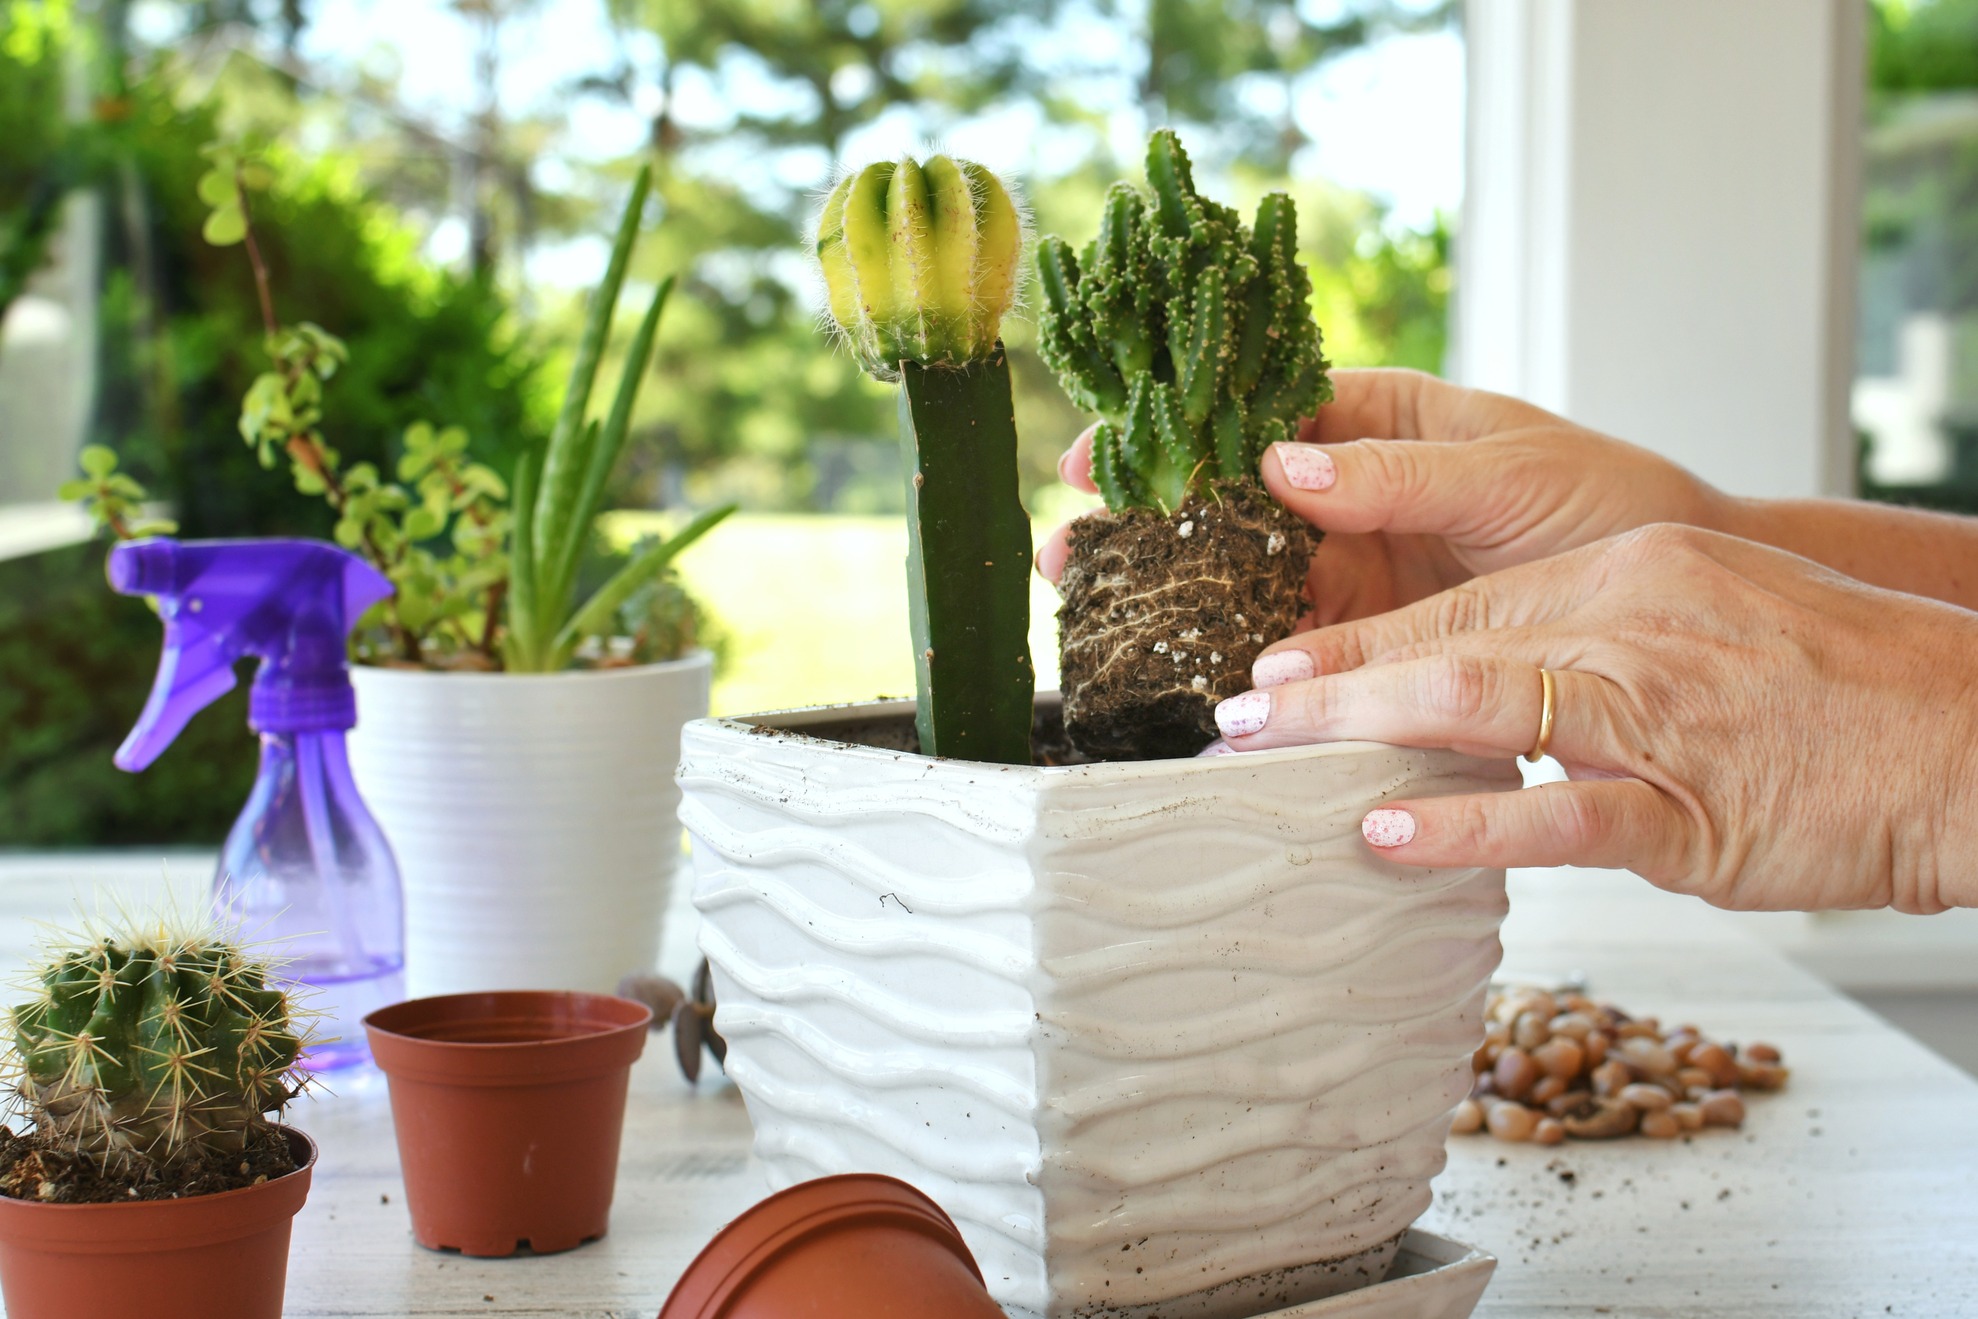 How to Set Up an Indoor Grow Kit